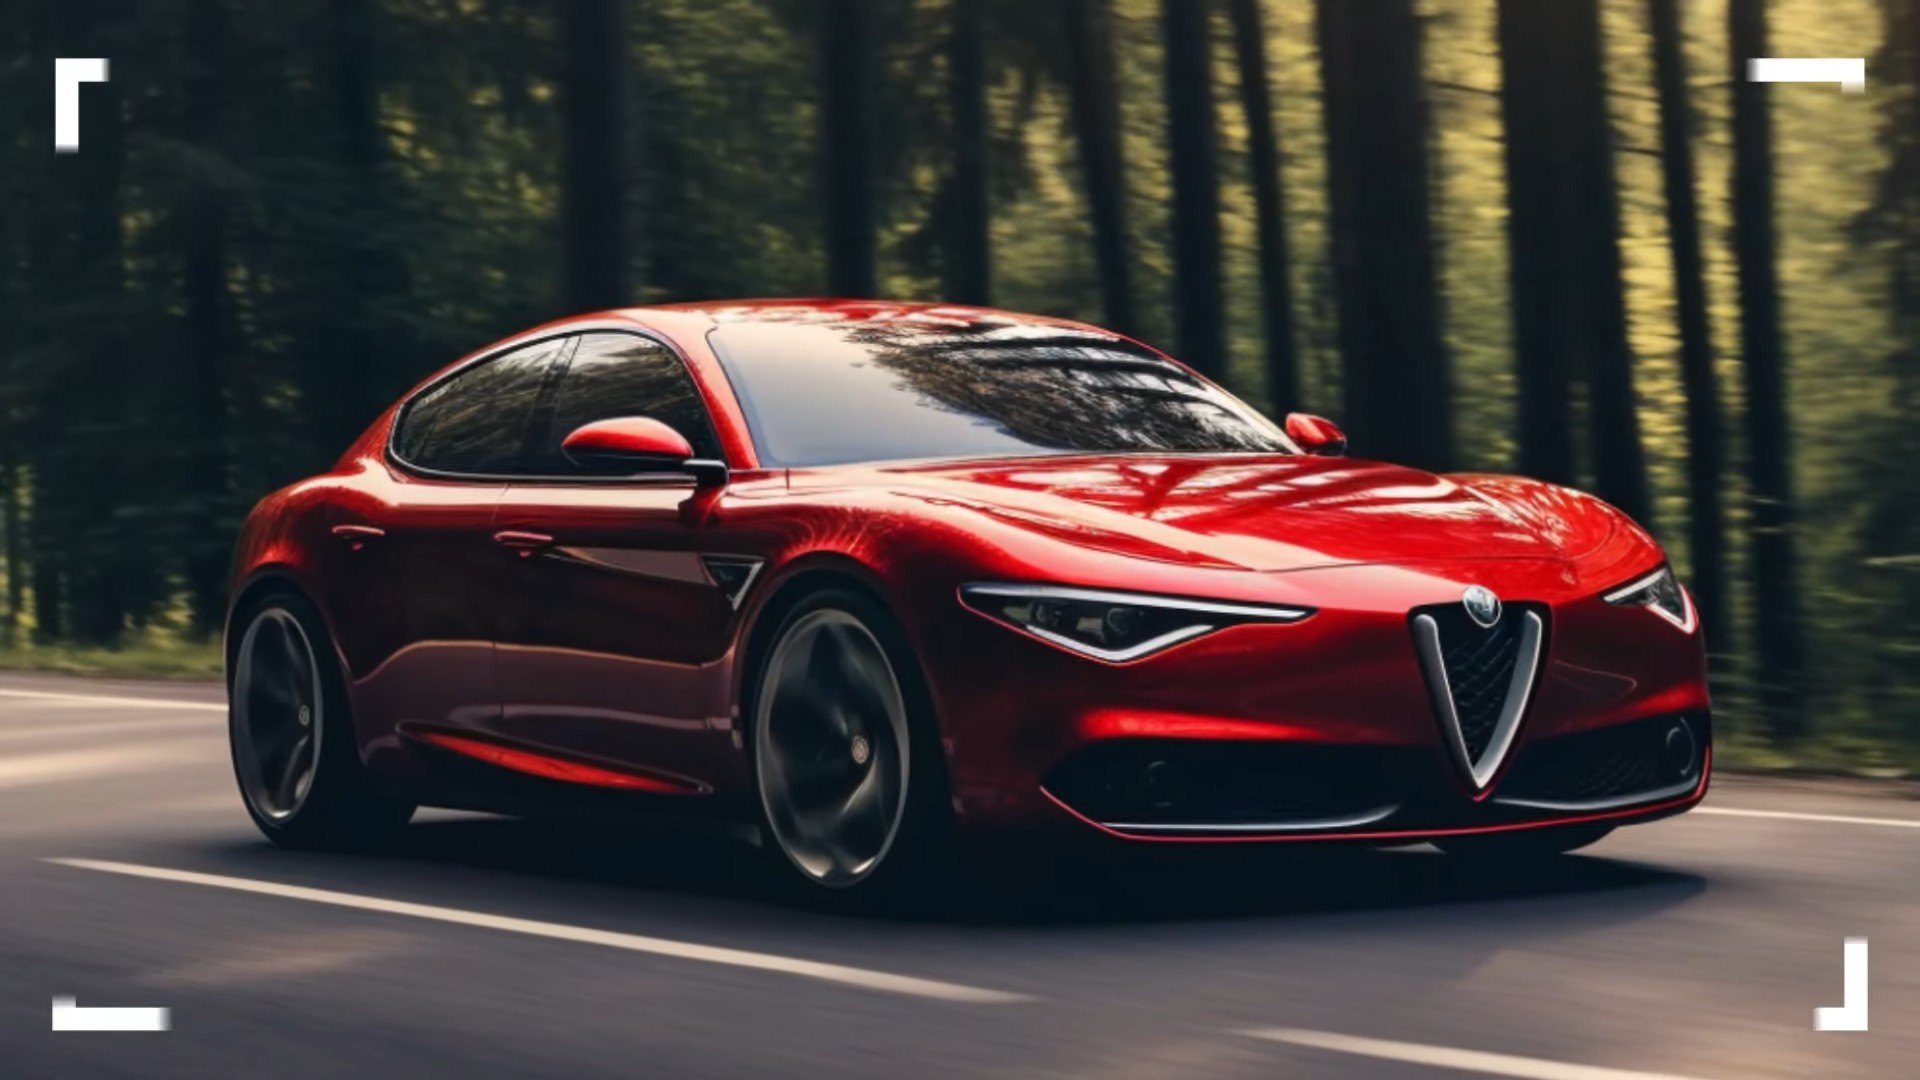 New Alfa Romeo Giulia EV Coming After 2025, Quadrifoglio To